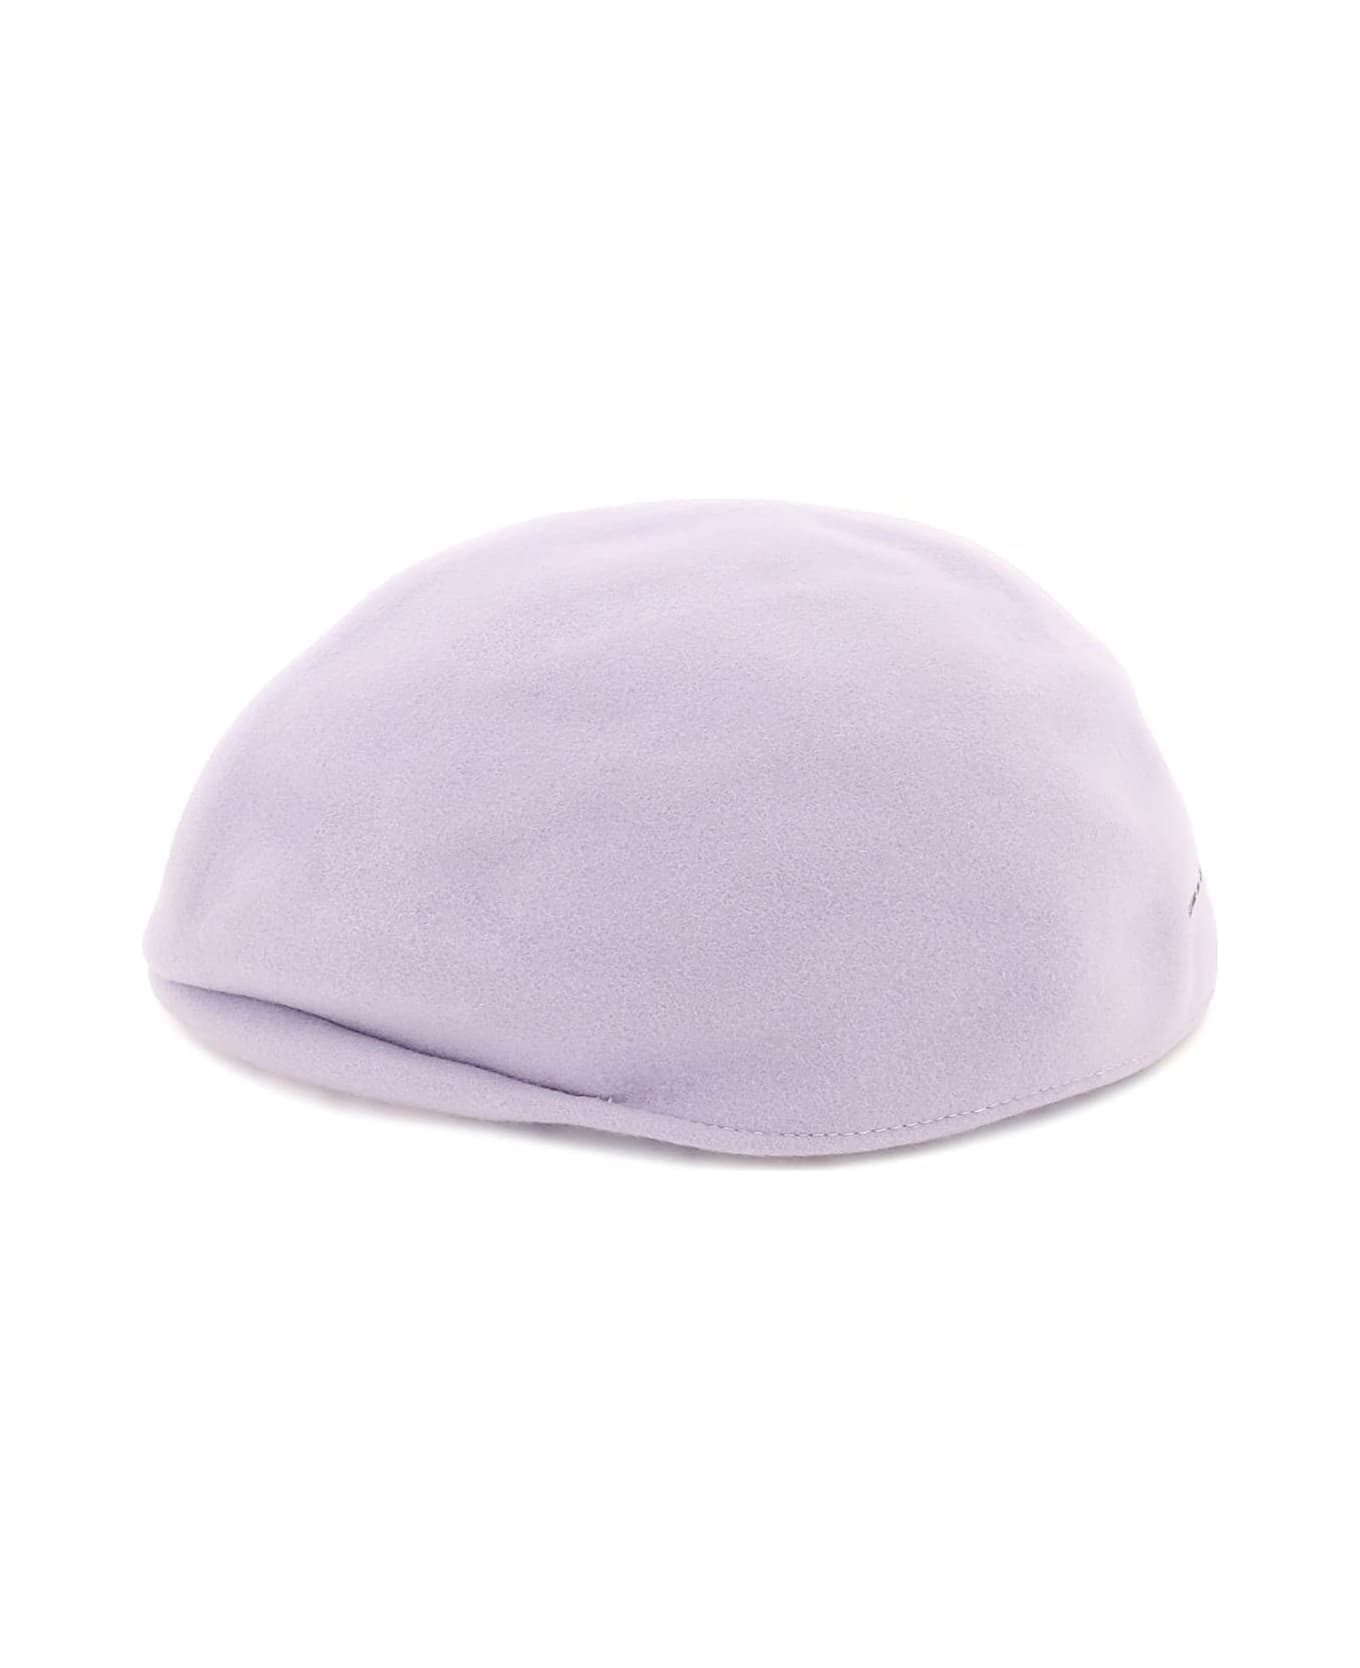 Comme des Garçons Shirt Wool Flat Cap - PALE PURPLE (Purple)